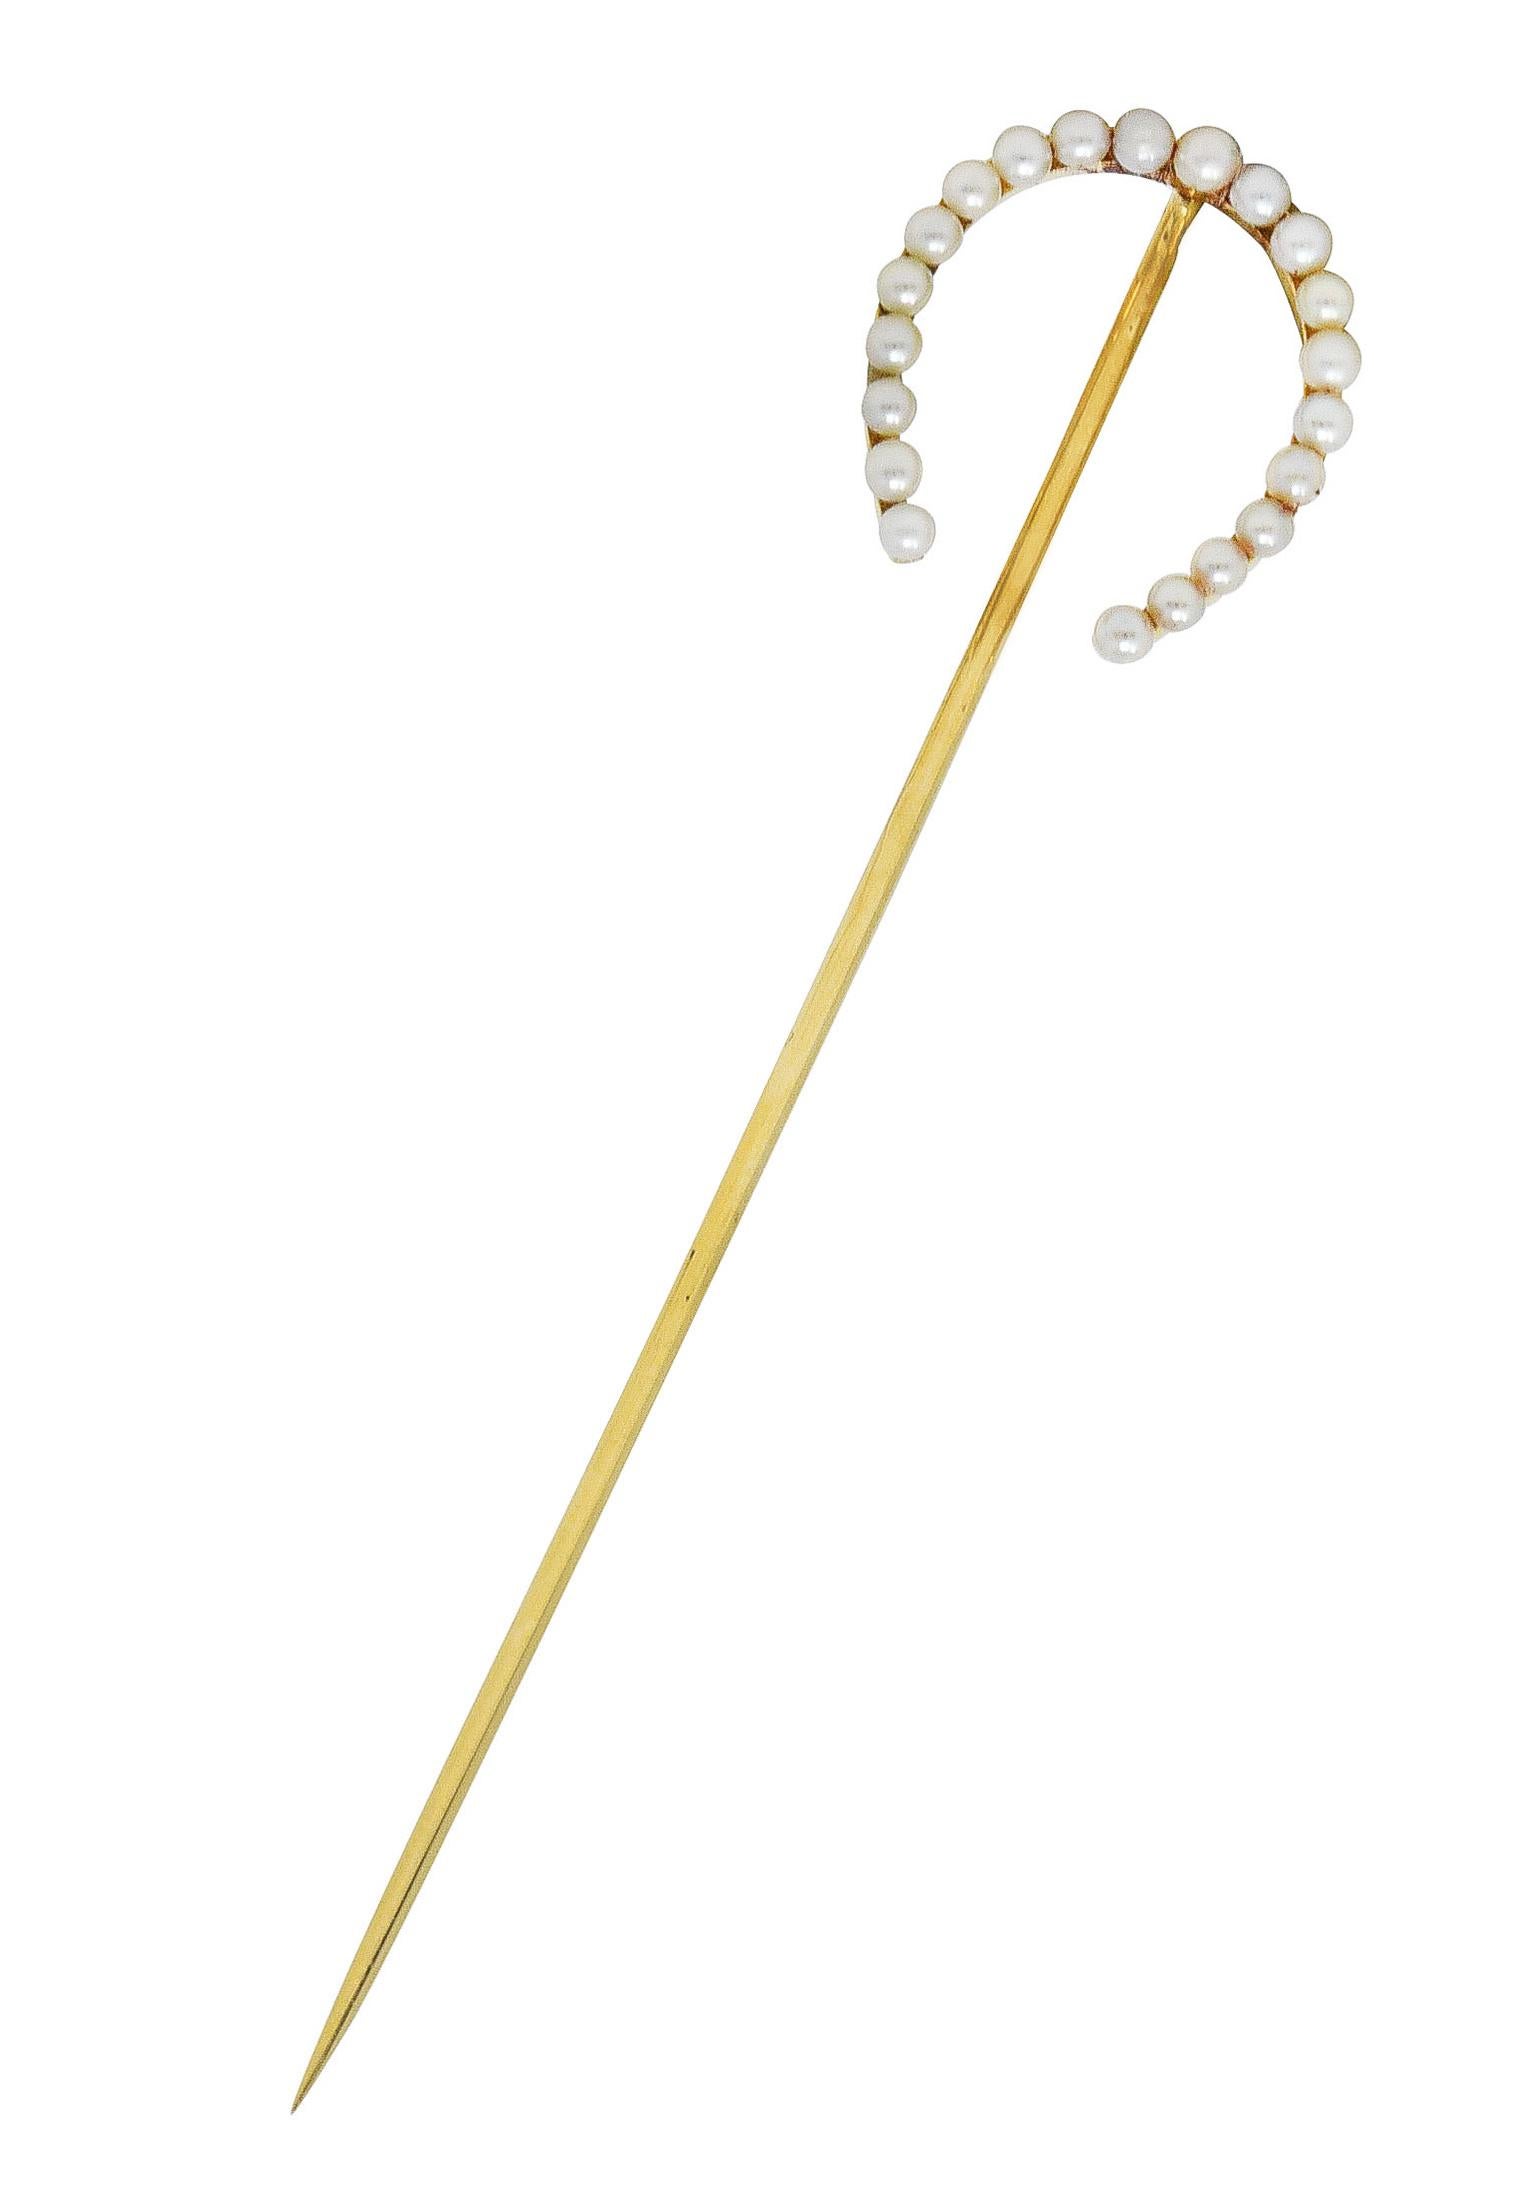 L'épingle à nourrice est conçue en forme de fer à cheval avec des perles de rocaille partout. D'une taille comprise entre 1,95 et 2,25 mm - de couleur blanche à crème avec de subtiles irisations. Estampillé 14k pour l'or 14 carats. Circa : 1910. Le